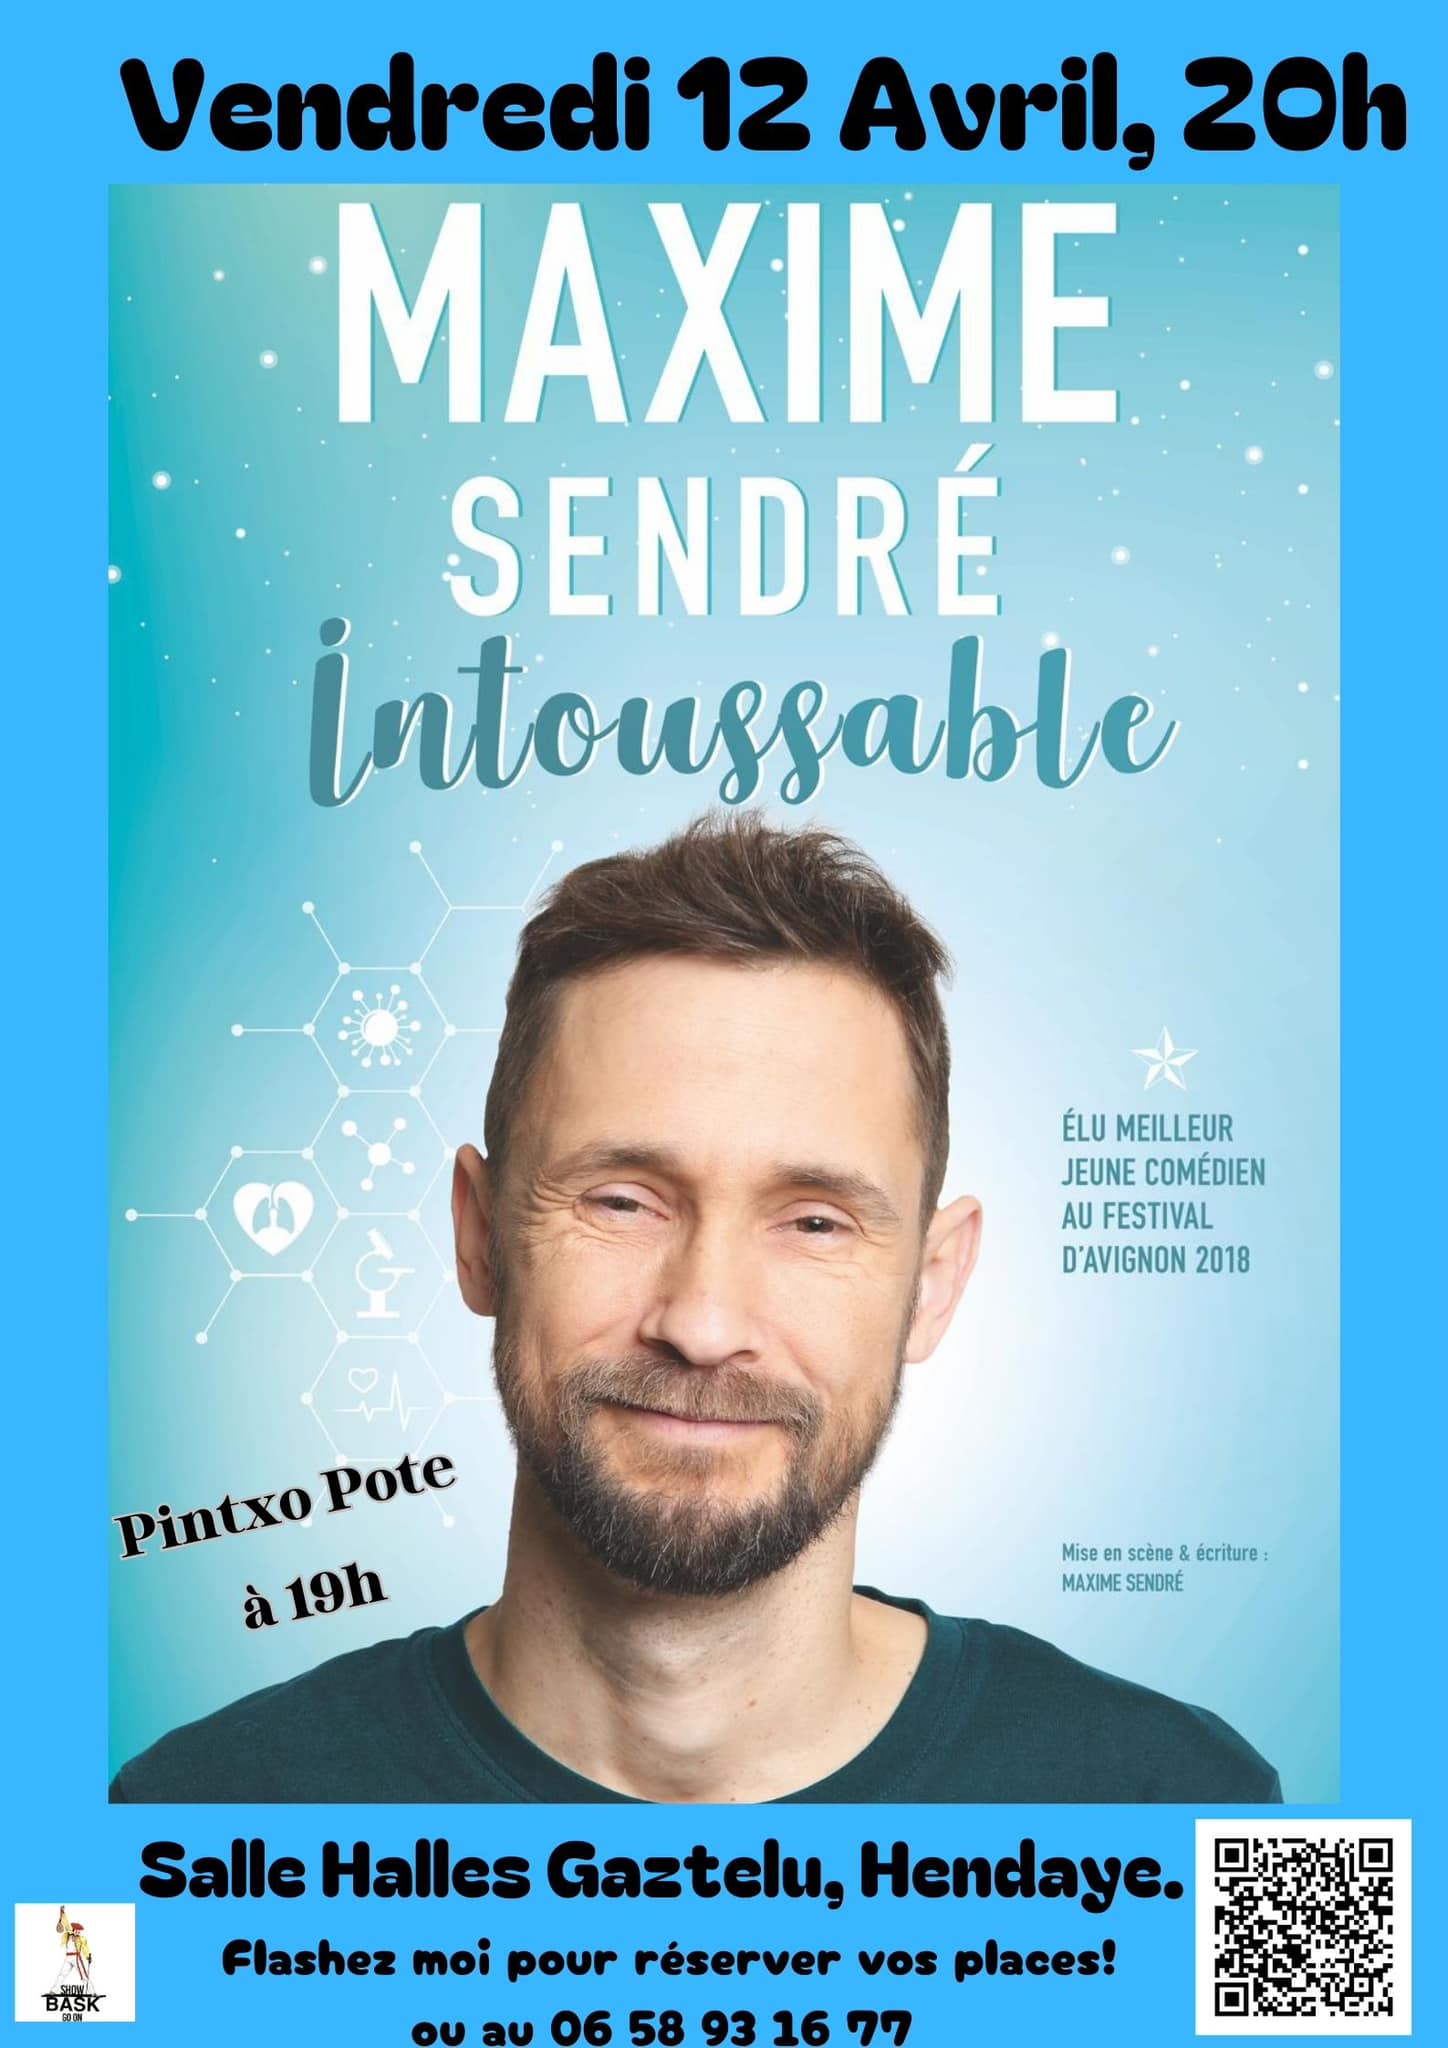 Maxime SENDRÉ Intoussable